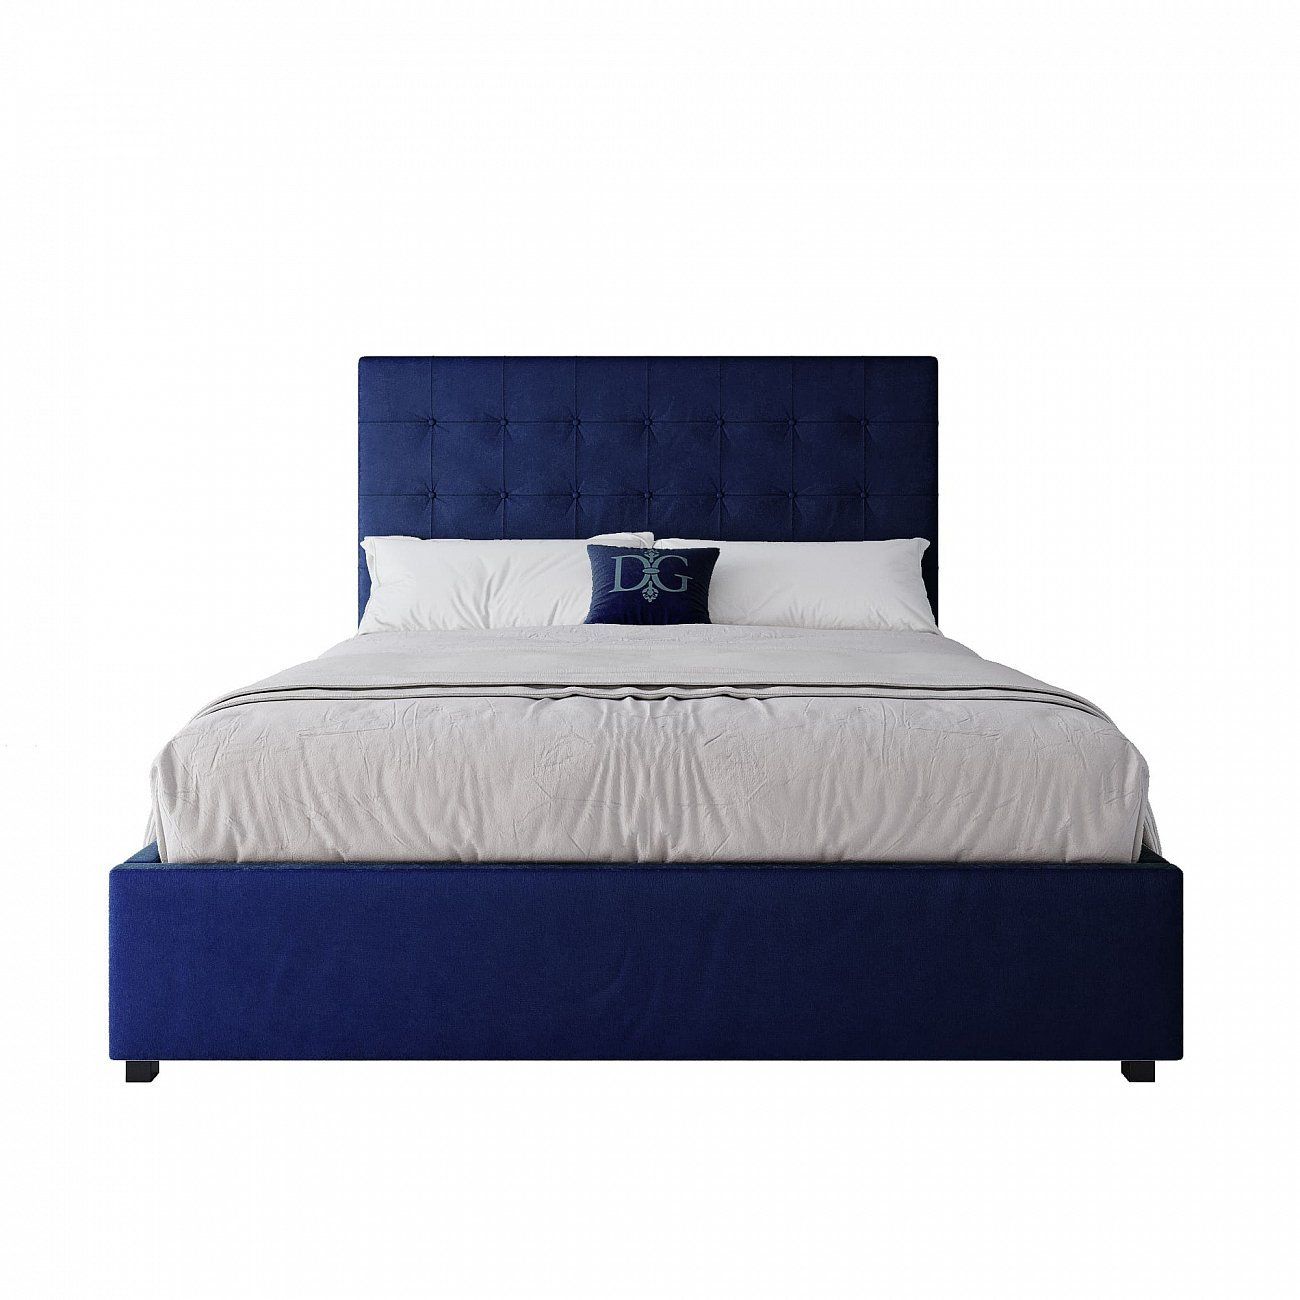 Кровать двуспальная 160х200 синяя Royal Black